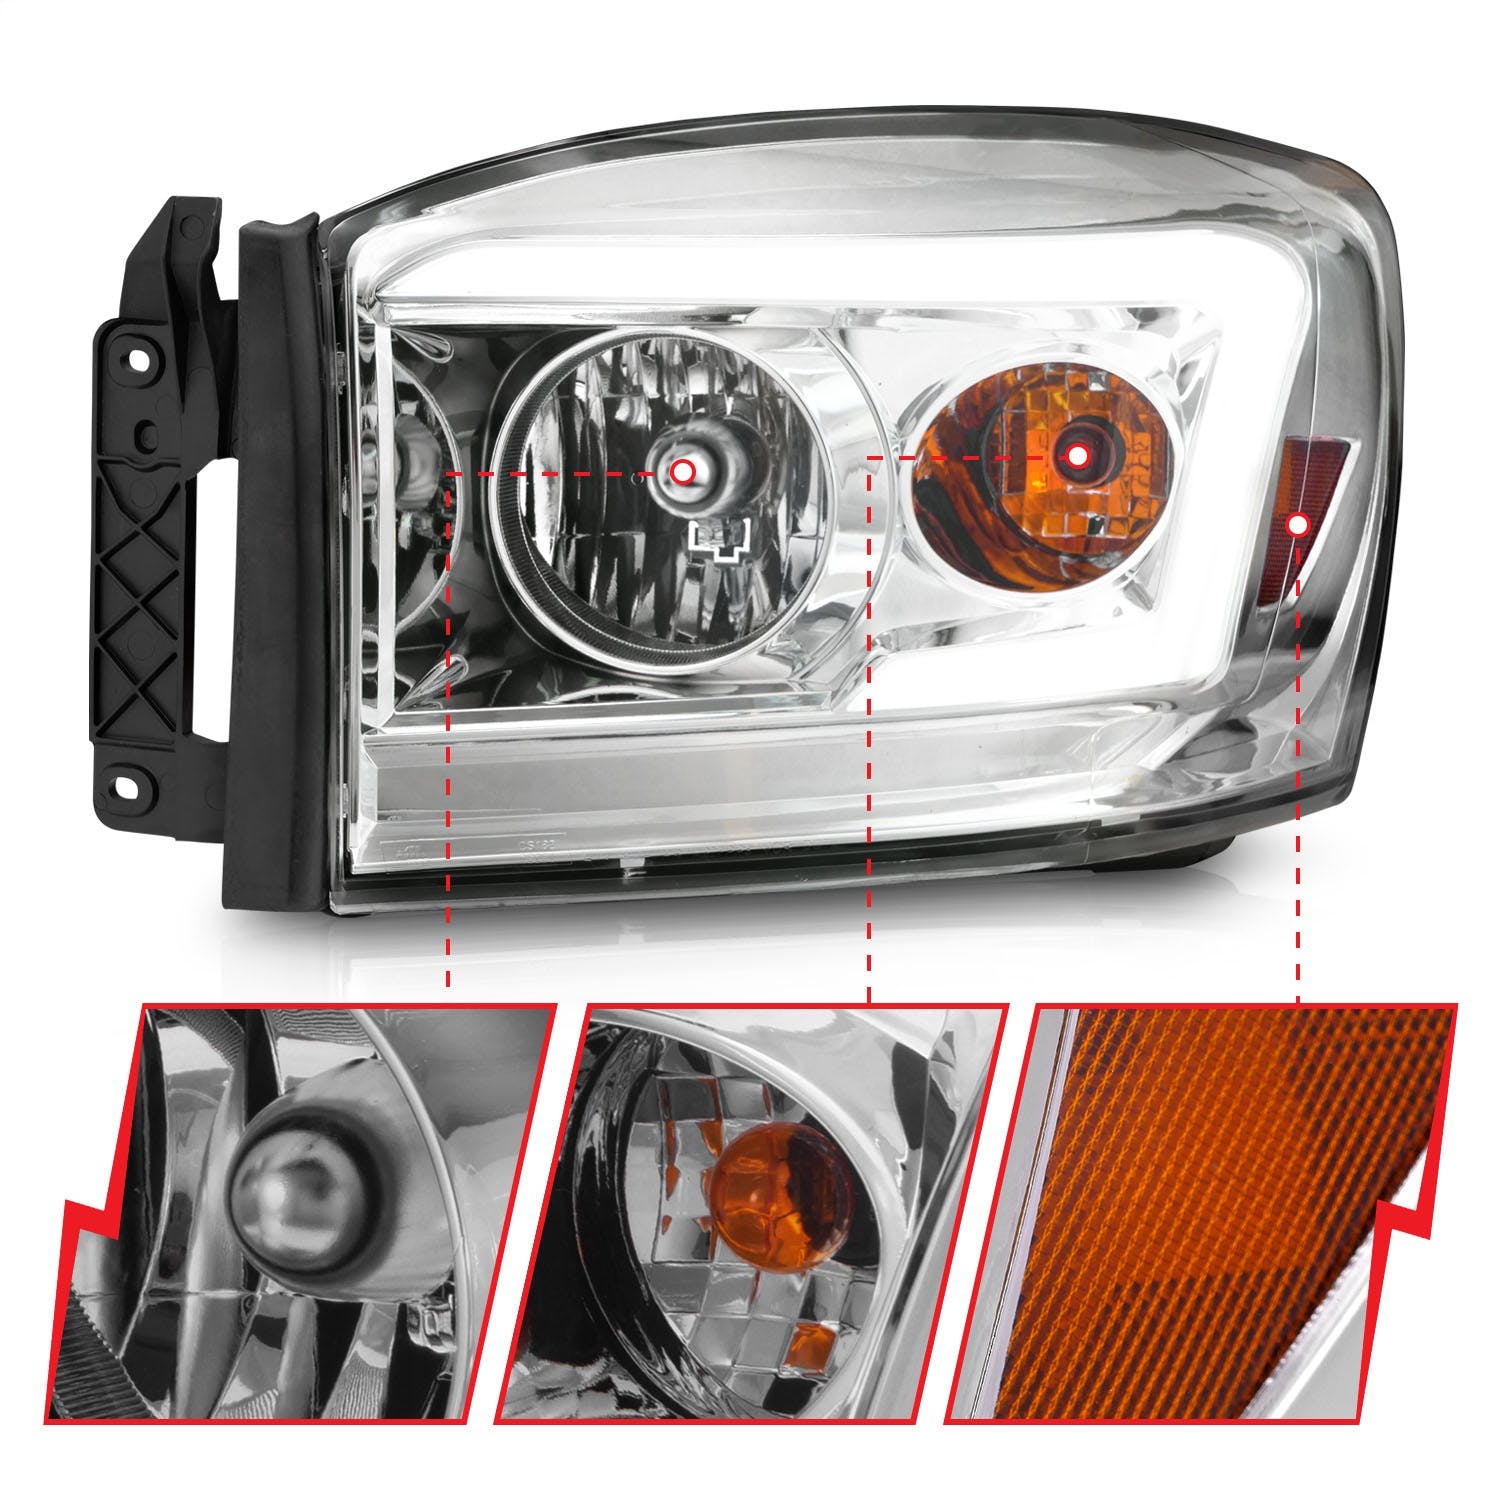 AnzoUSA 111525 Crystal Headlight with Light Bar Chrome Housing Clear Lens